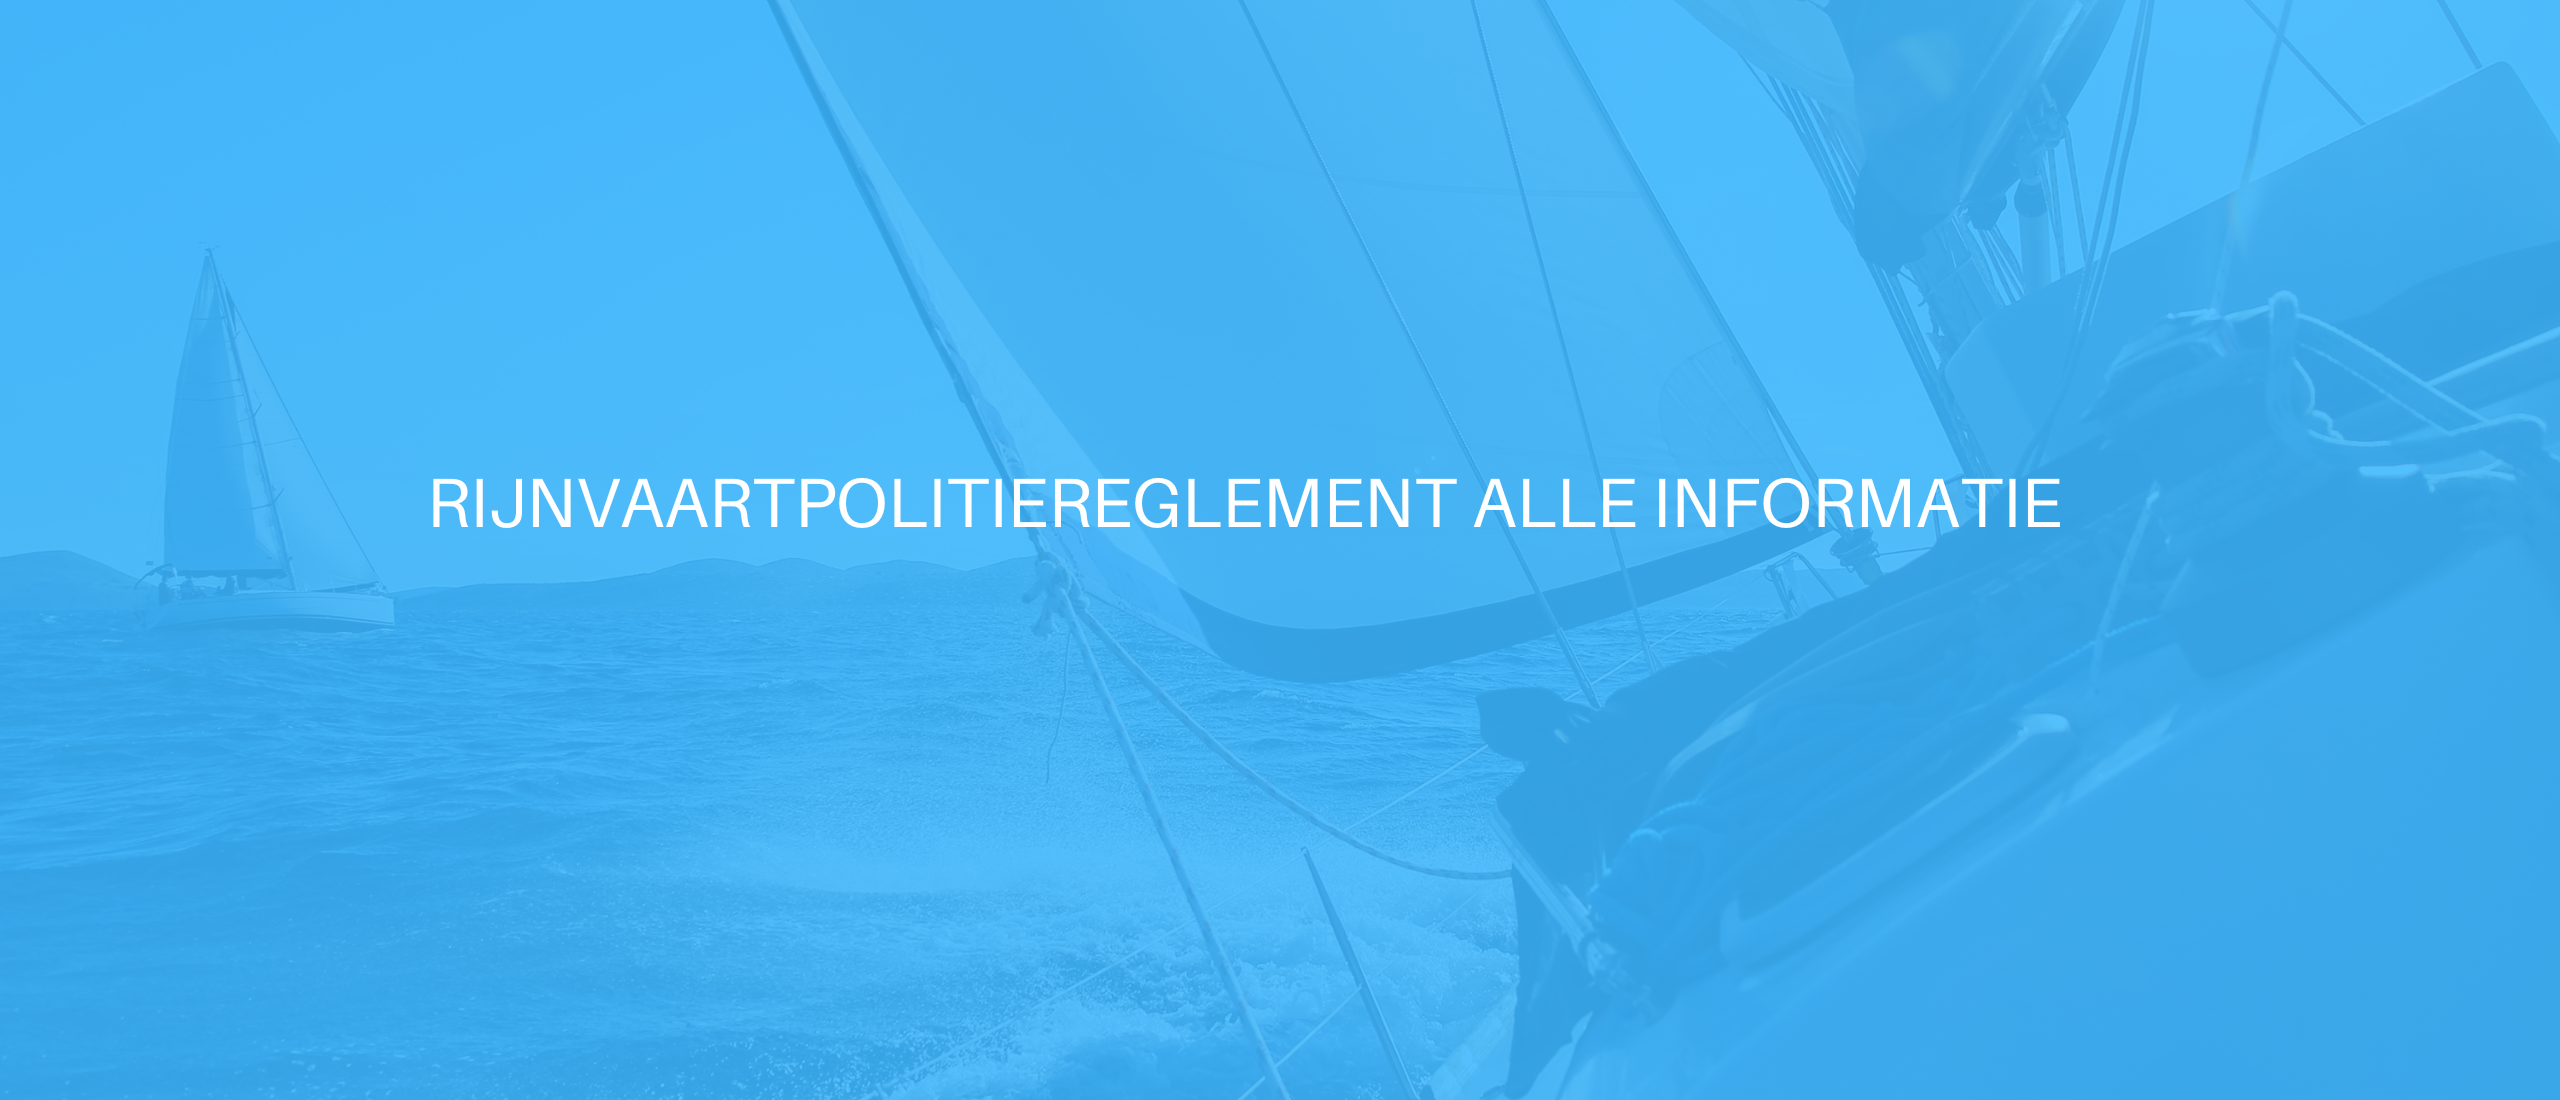 Rijnvaartpolitiereglement alle informatie